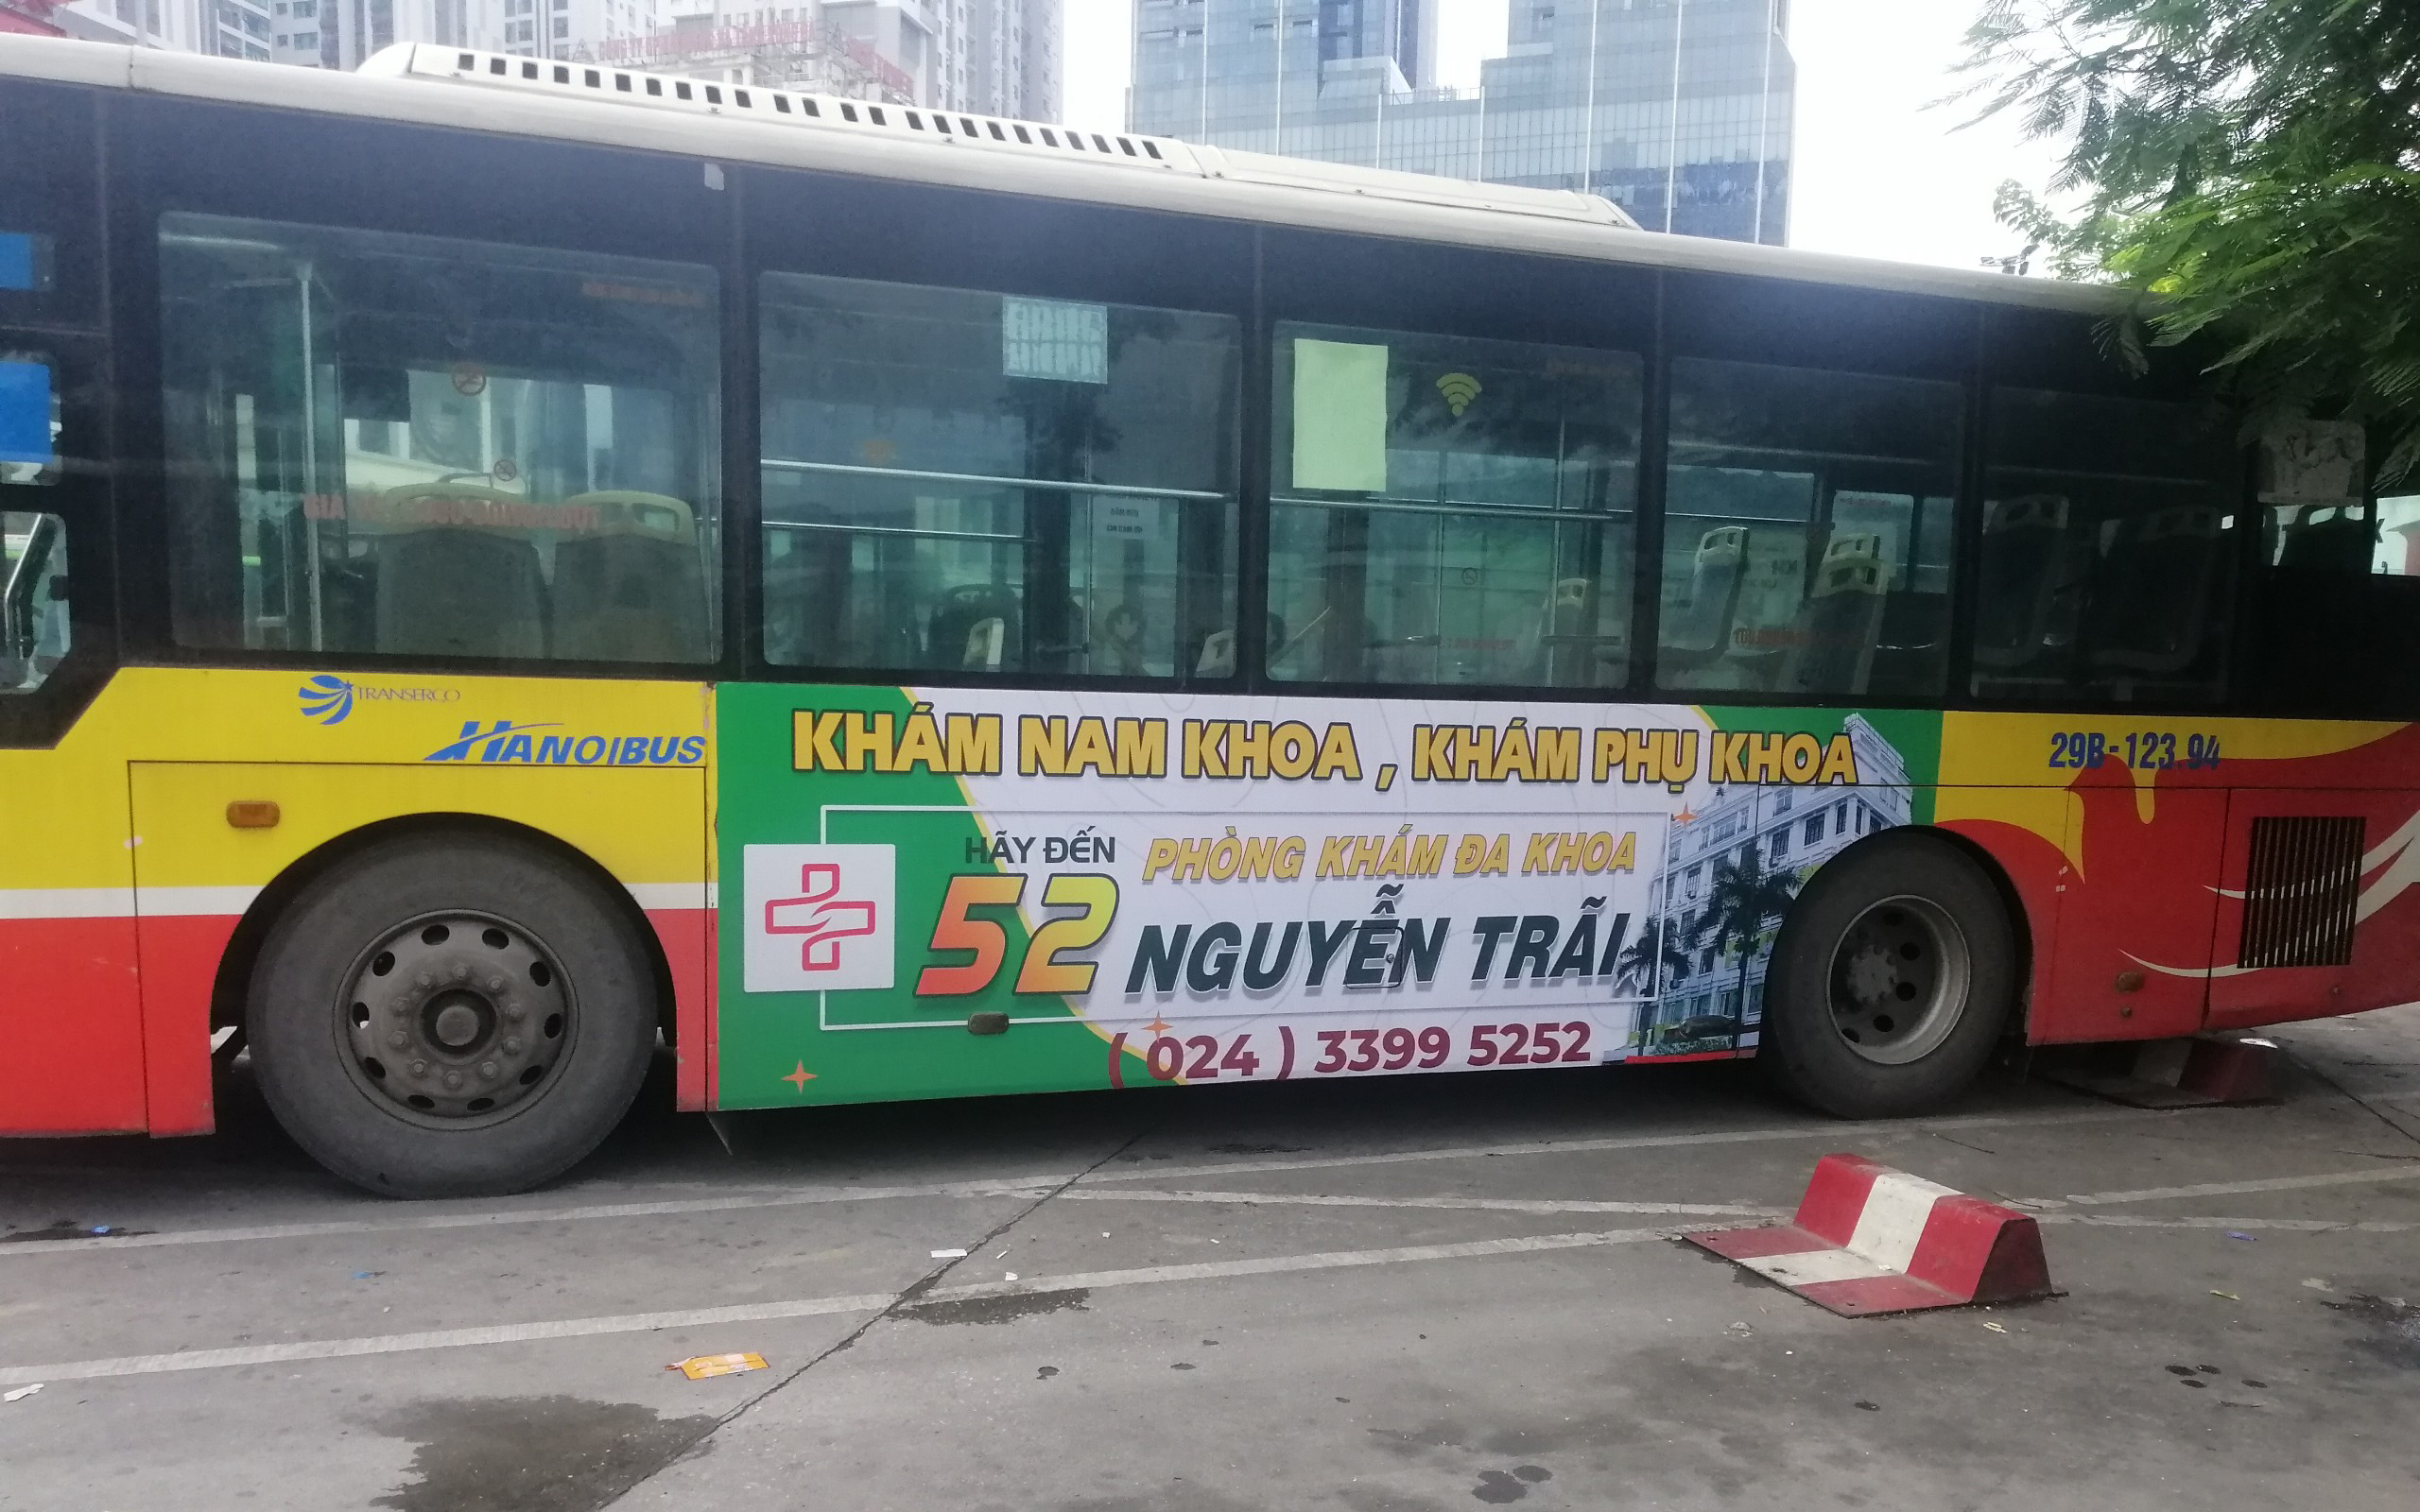 Quảng cáo xe bus tuyến 49 - Xe bus Hà Nội